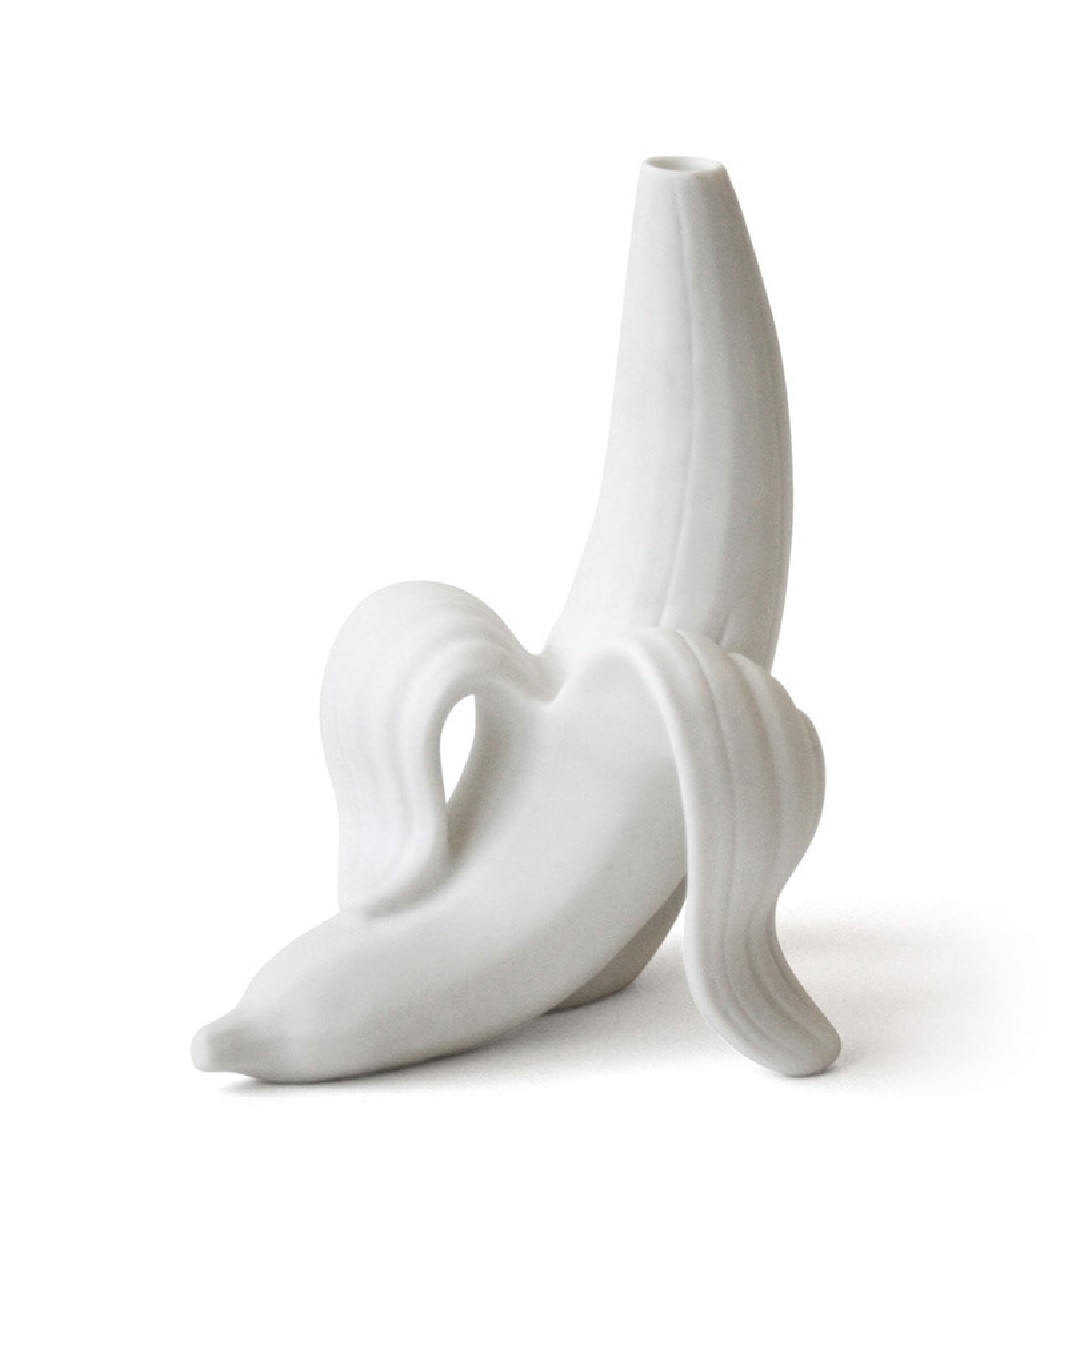 Banana vase in white